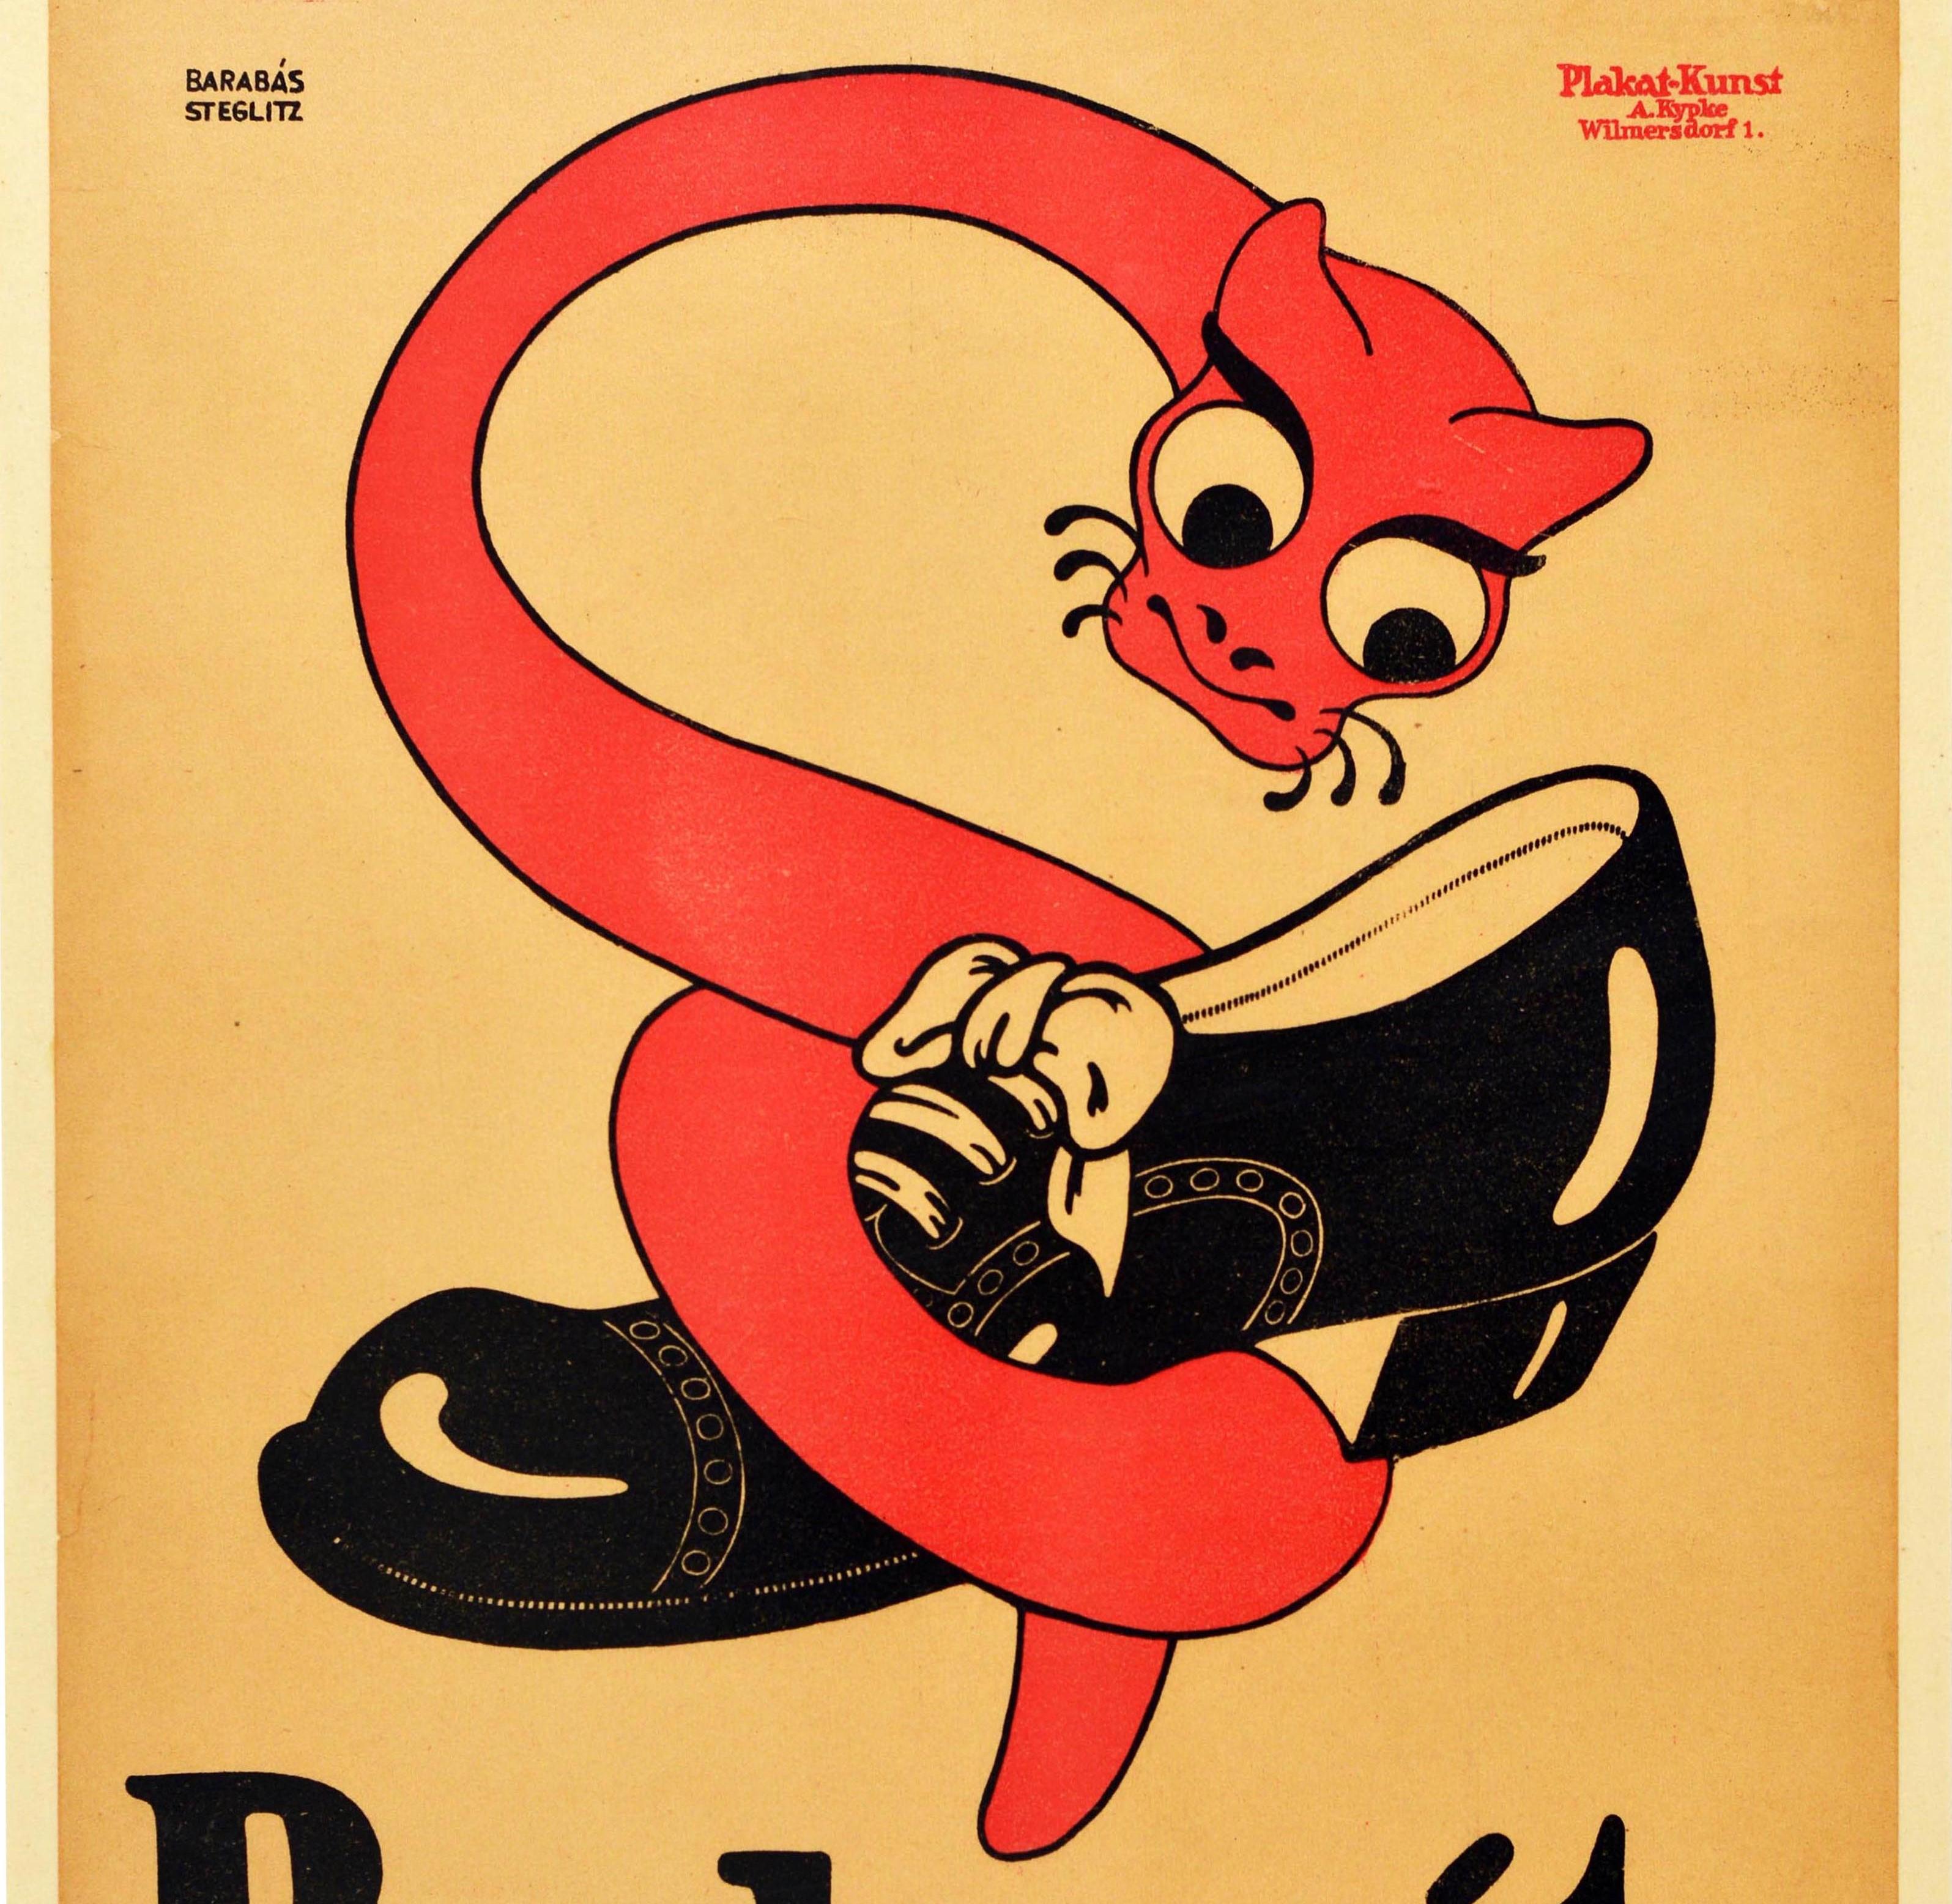 Originales antikes Werbeplakat für die Schuhmacherei Berlowitz in der Munzstraße 24 in Berlin mit einem großartigen Design, das ein Bild im Cartoon-Stil einer roten schlangenähnlichen Kreatur mit großen Augen zeigt, die sich um einen glänzenden